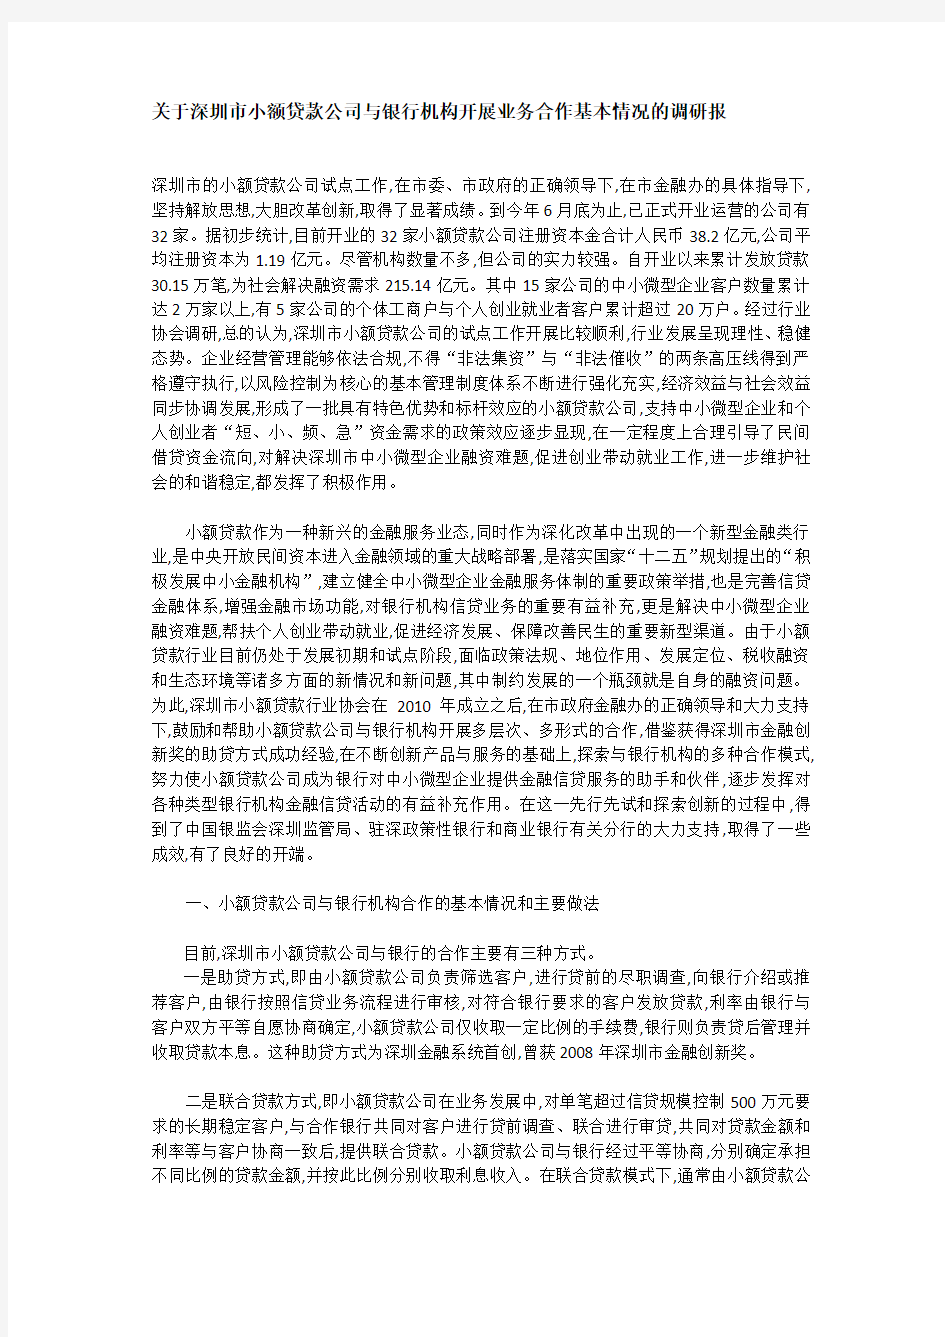 关于深圳市小额贷款公司与银行机构开展业务合作基本情况的调研报